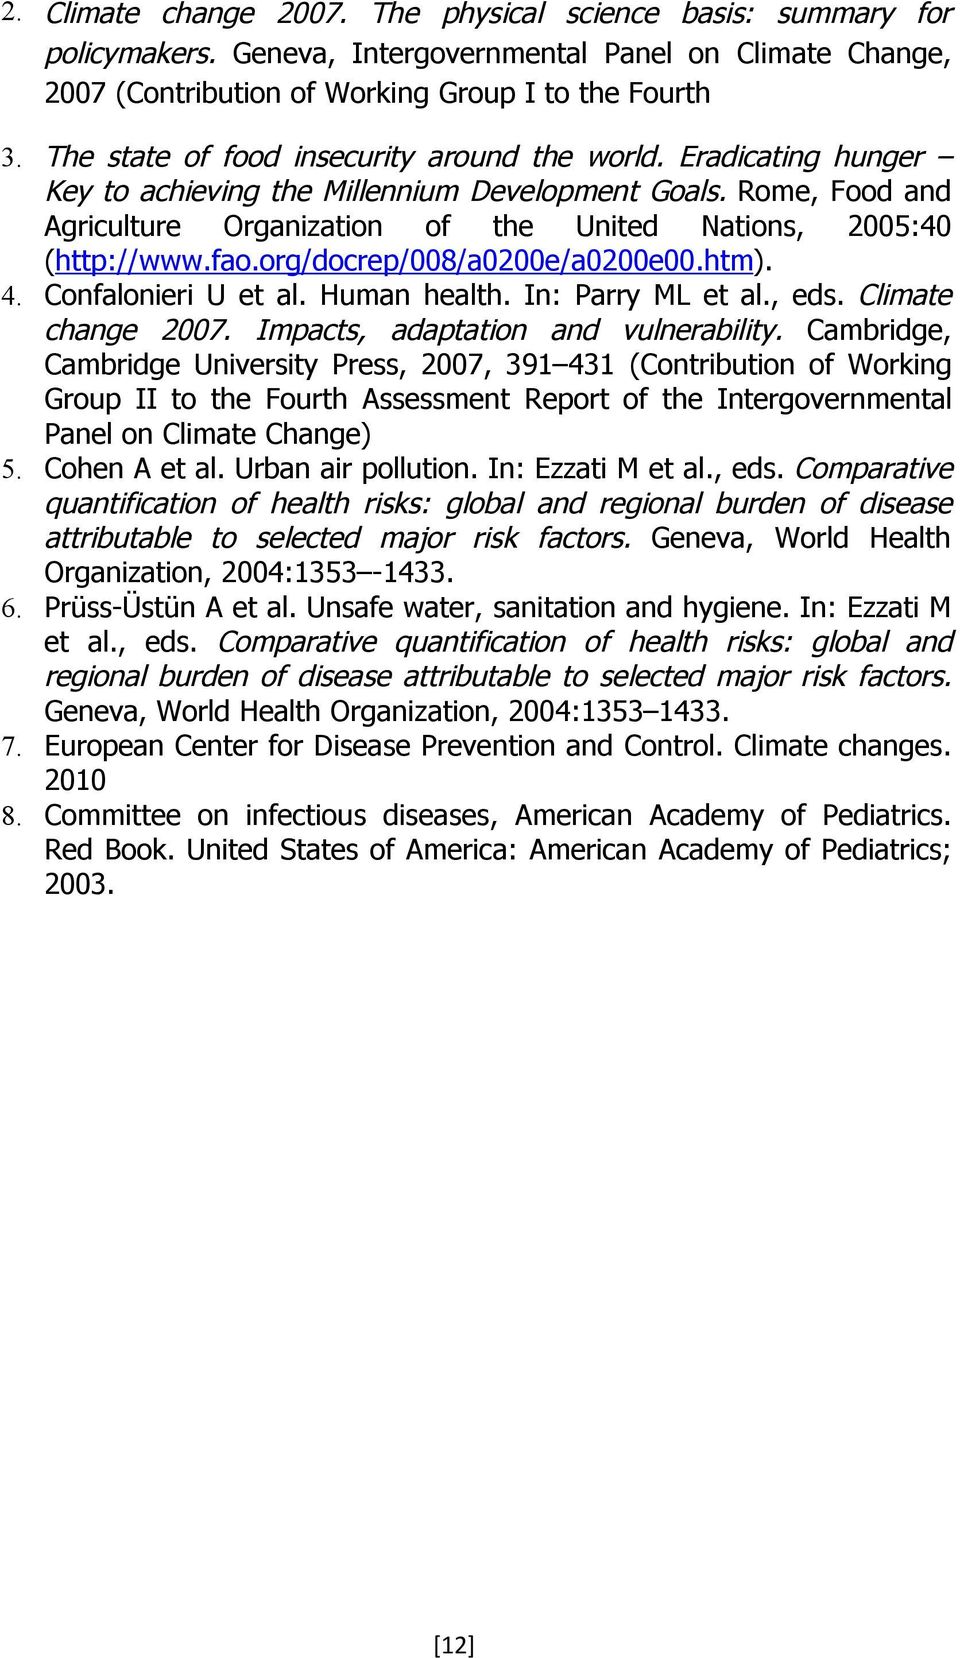 fao.org/docrep/008/a0200e/a0200e00.htm). 4. Confalonieri U et al. Human health. In: Parry ML et al., eds. Climate change 2007. Impacts, adaptation and vulnerability.